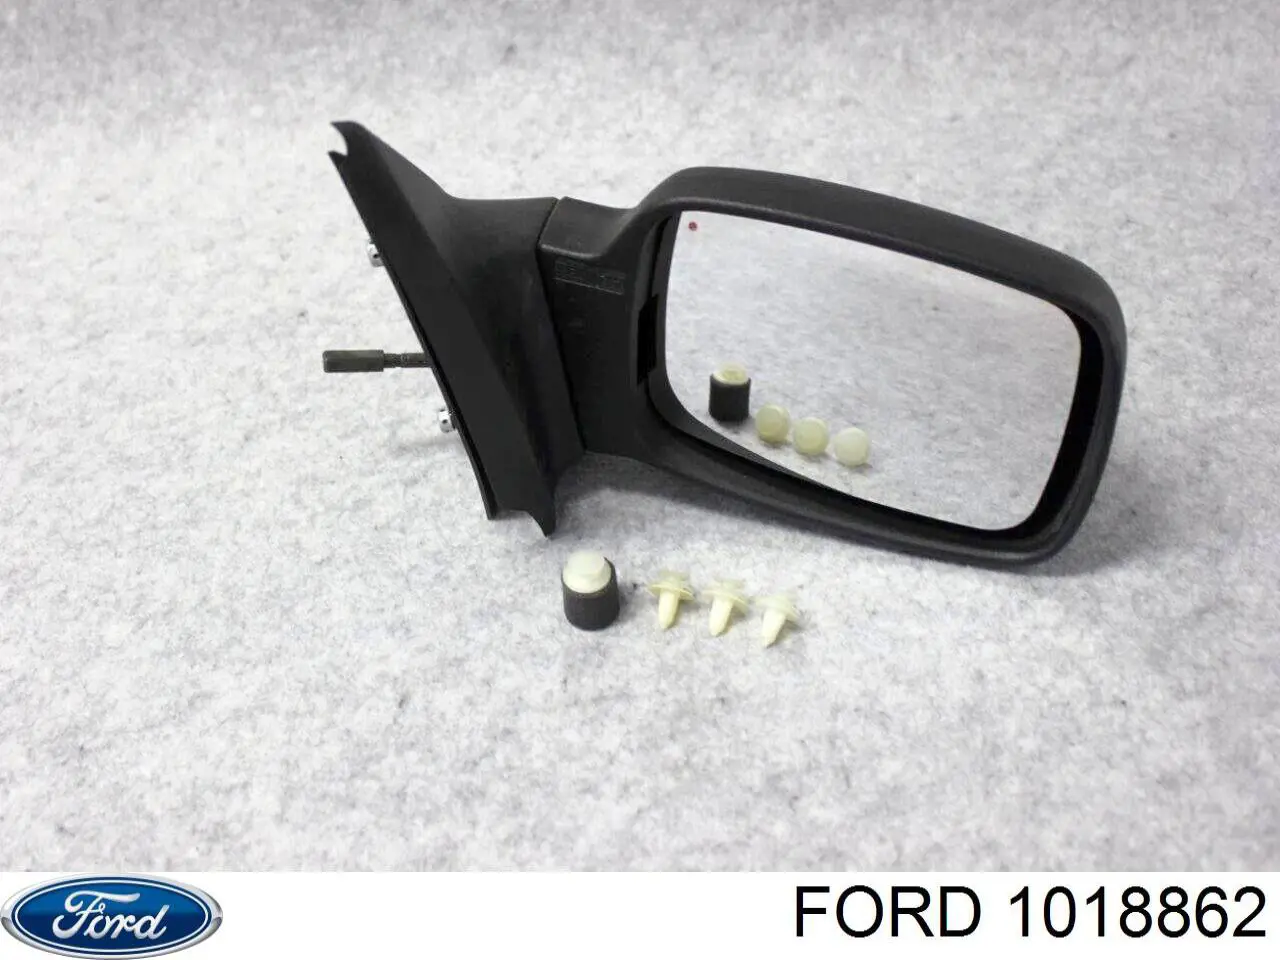 Наявність та актуальна ціна - після перевірки по складу на Ford Fiesta COURIER 